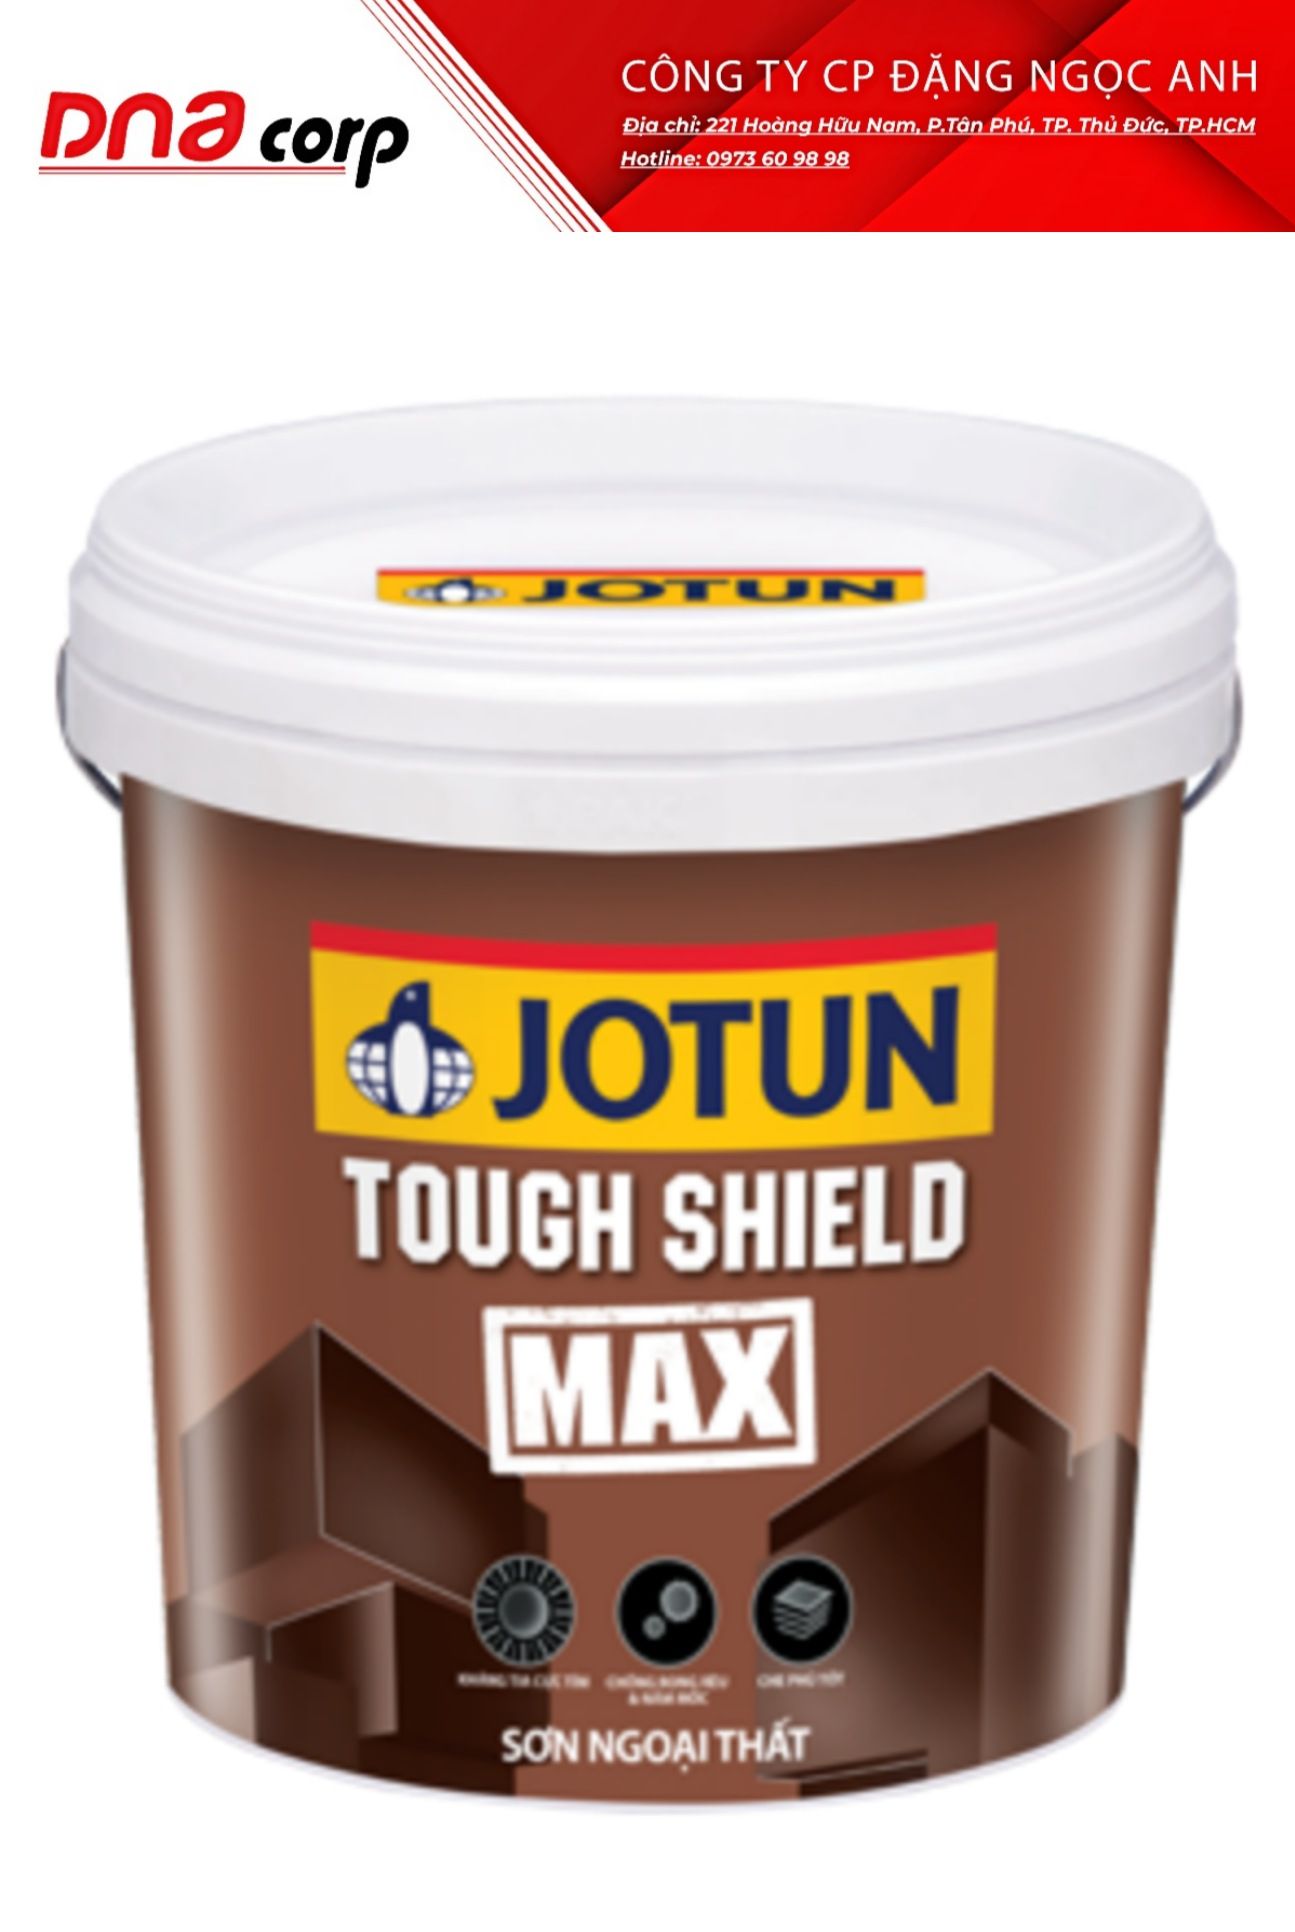  sơn jotun Tough Shield Max chính hãng 